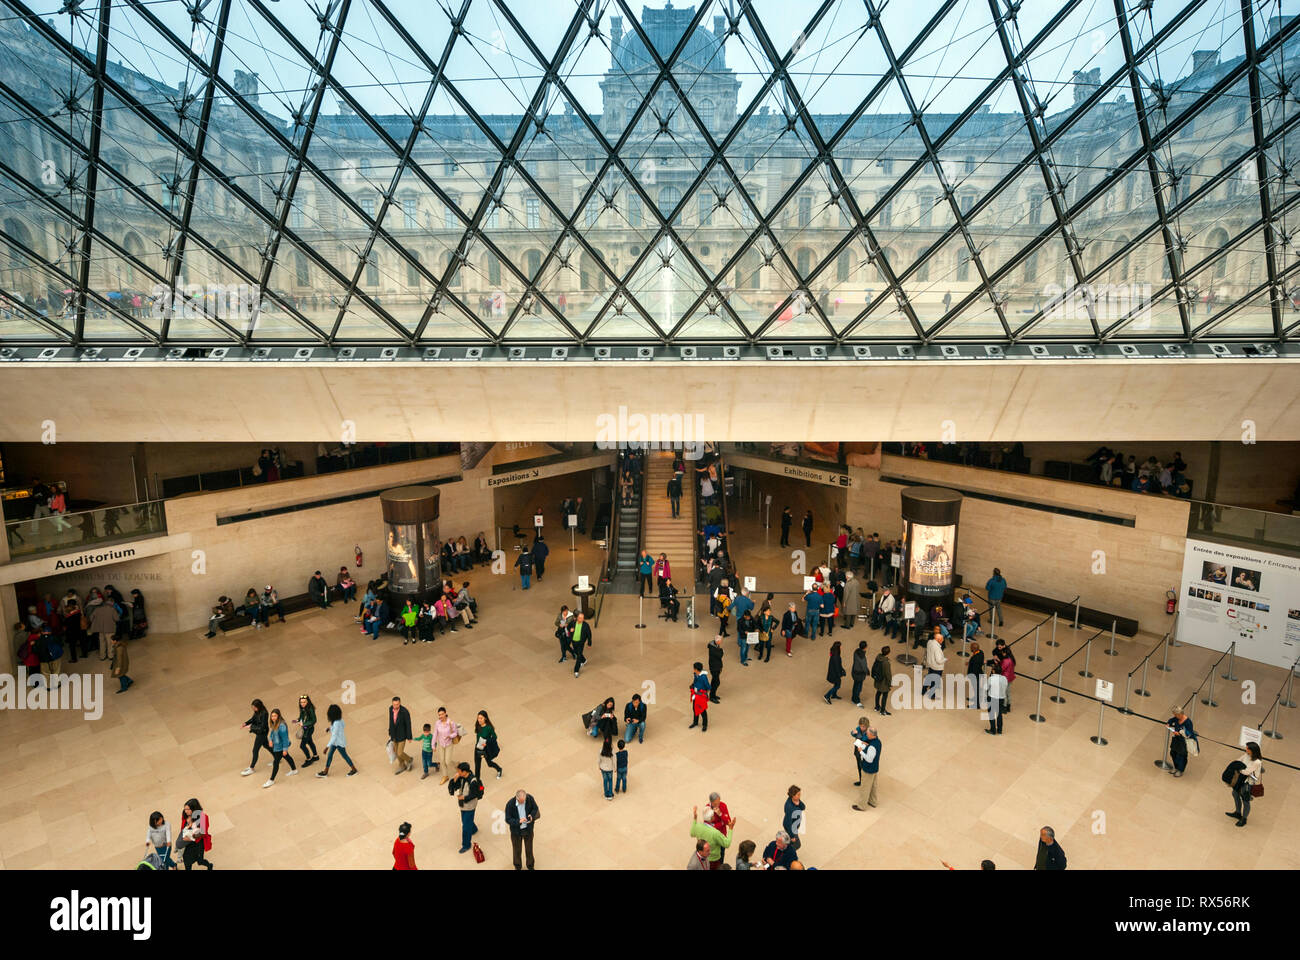 Soffitto di vetro della piramide del Louvre Foto Stock